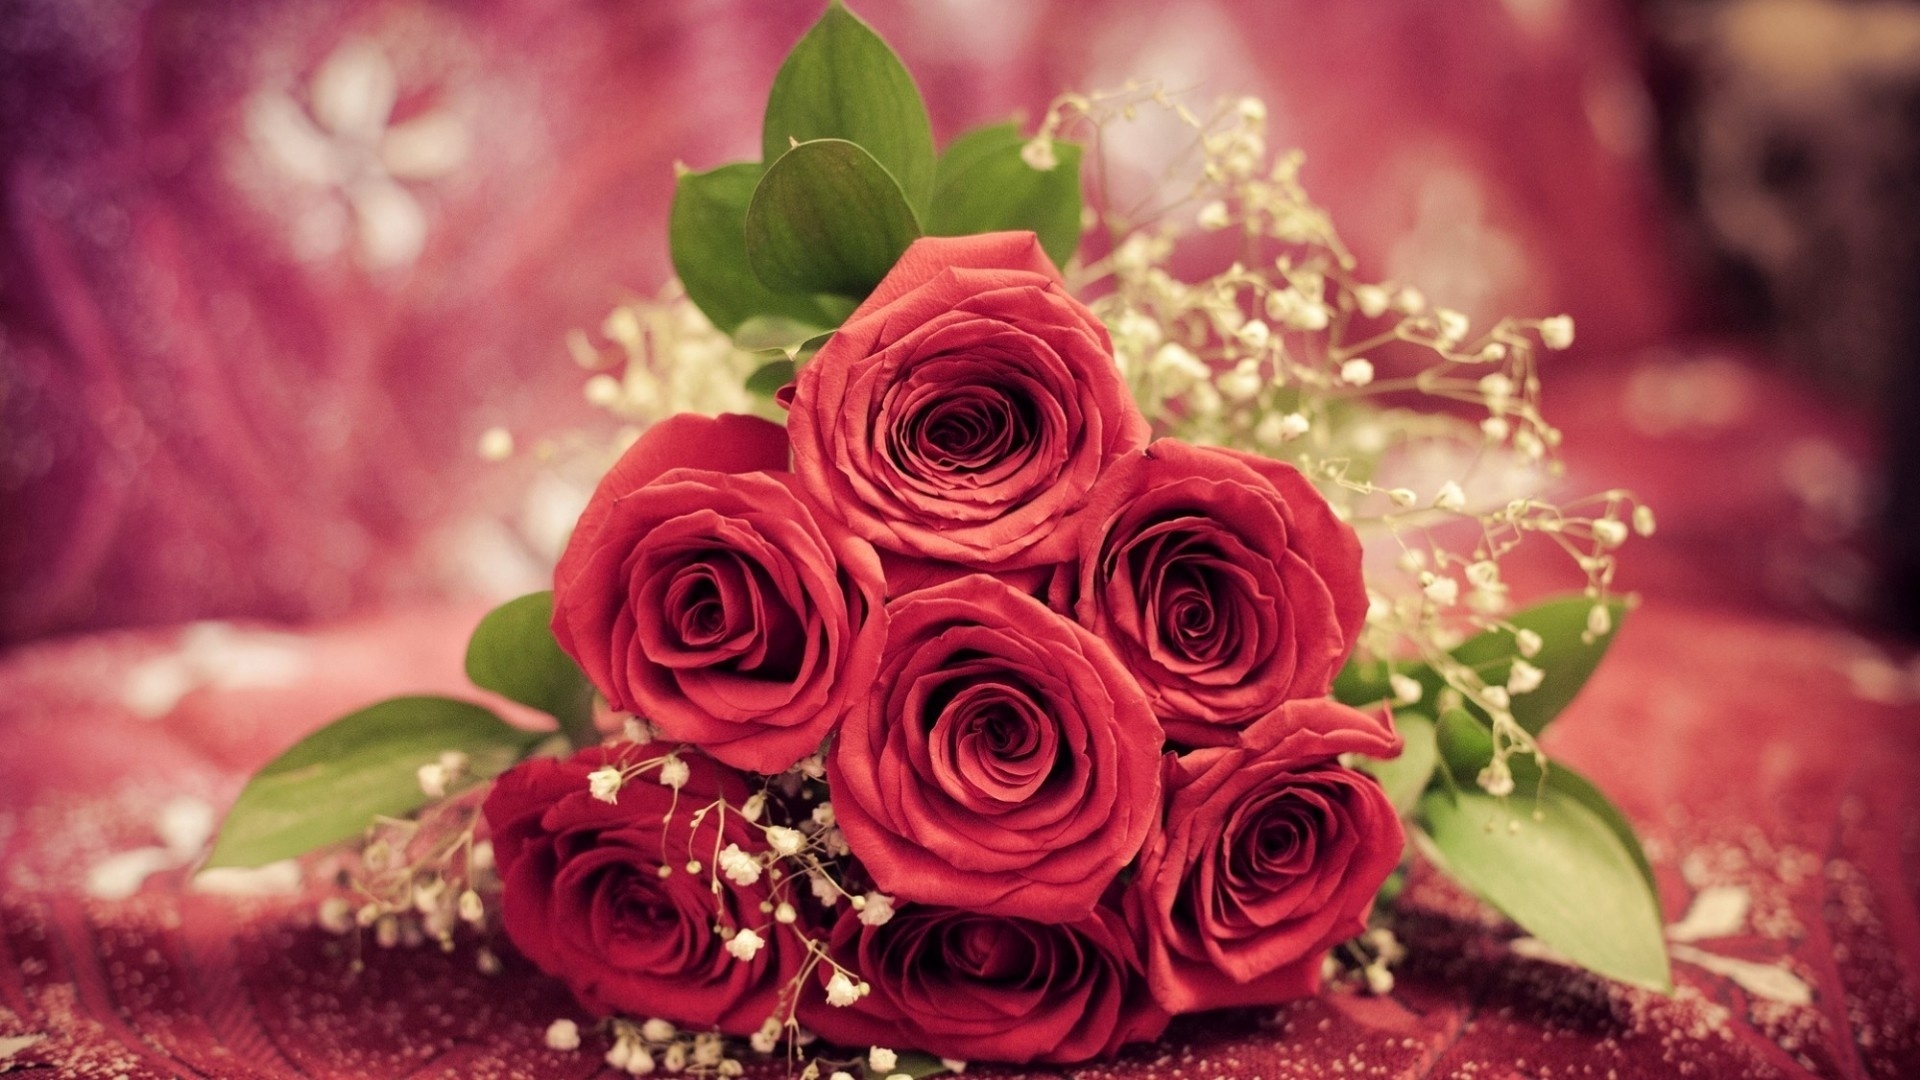 장미 다발 배경 화면,꽃,정원 장미,꽃다발,빨간,분홍